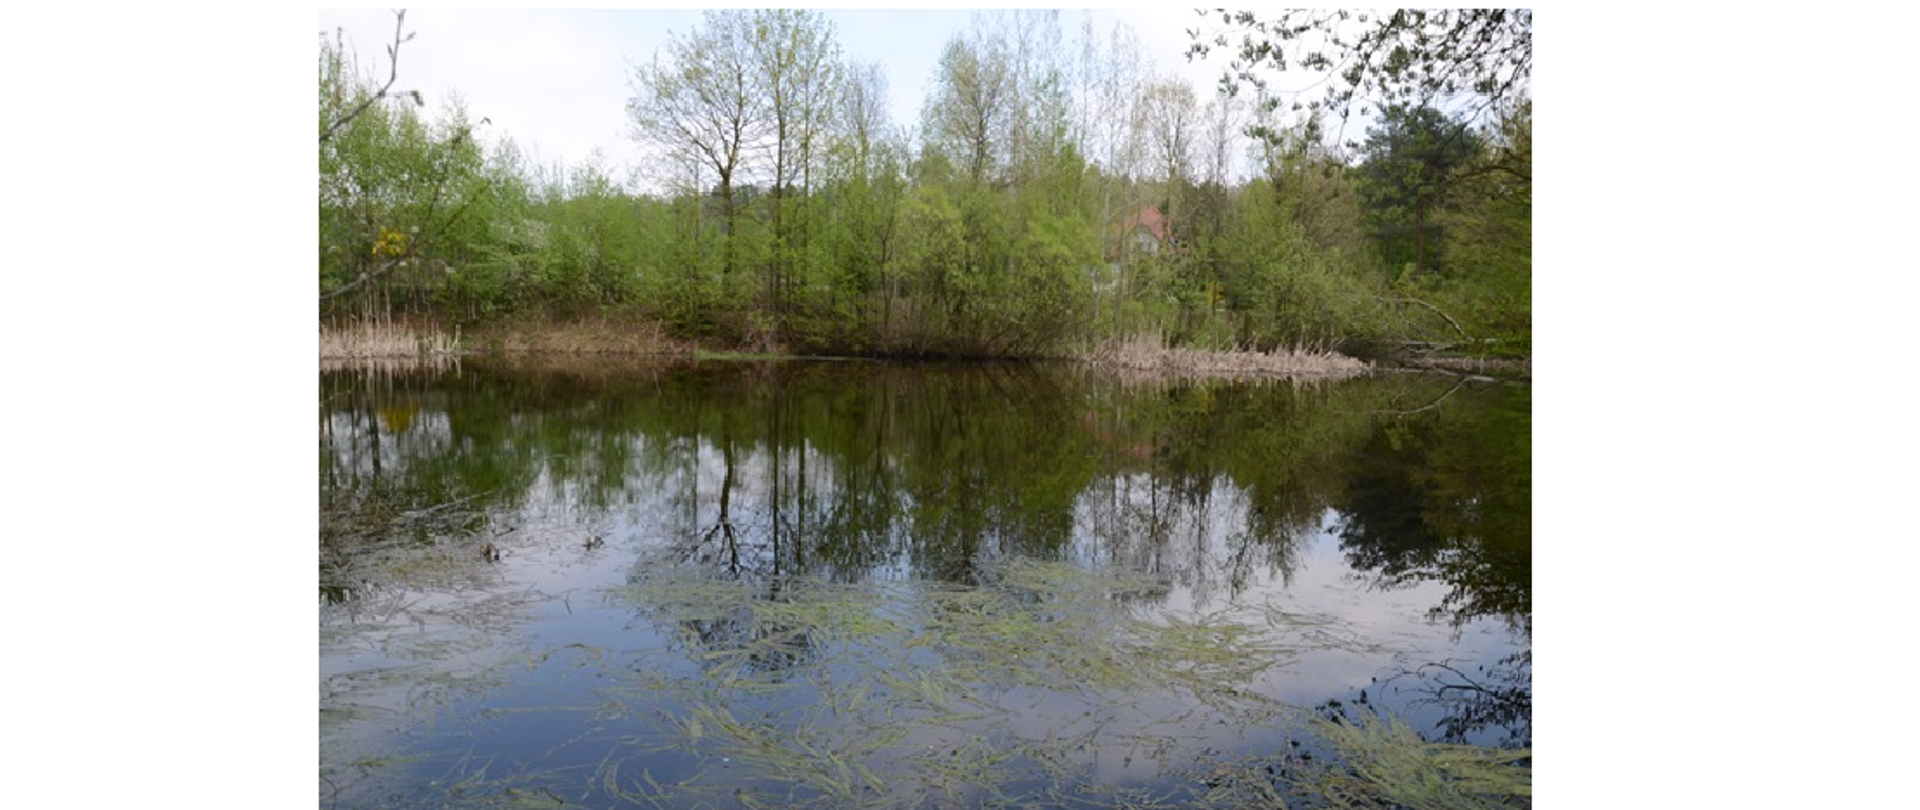 Zdjęcie przedstawia zbiornik wody mniejszy od jeziora i większy od terenu podmokłego. Za stawem widzimy las teren wokół zbiornika wody jest pokryty roślinnością.